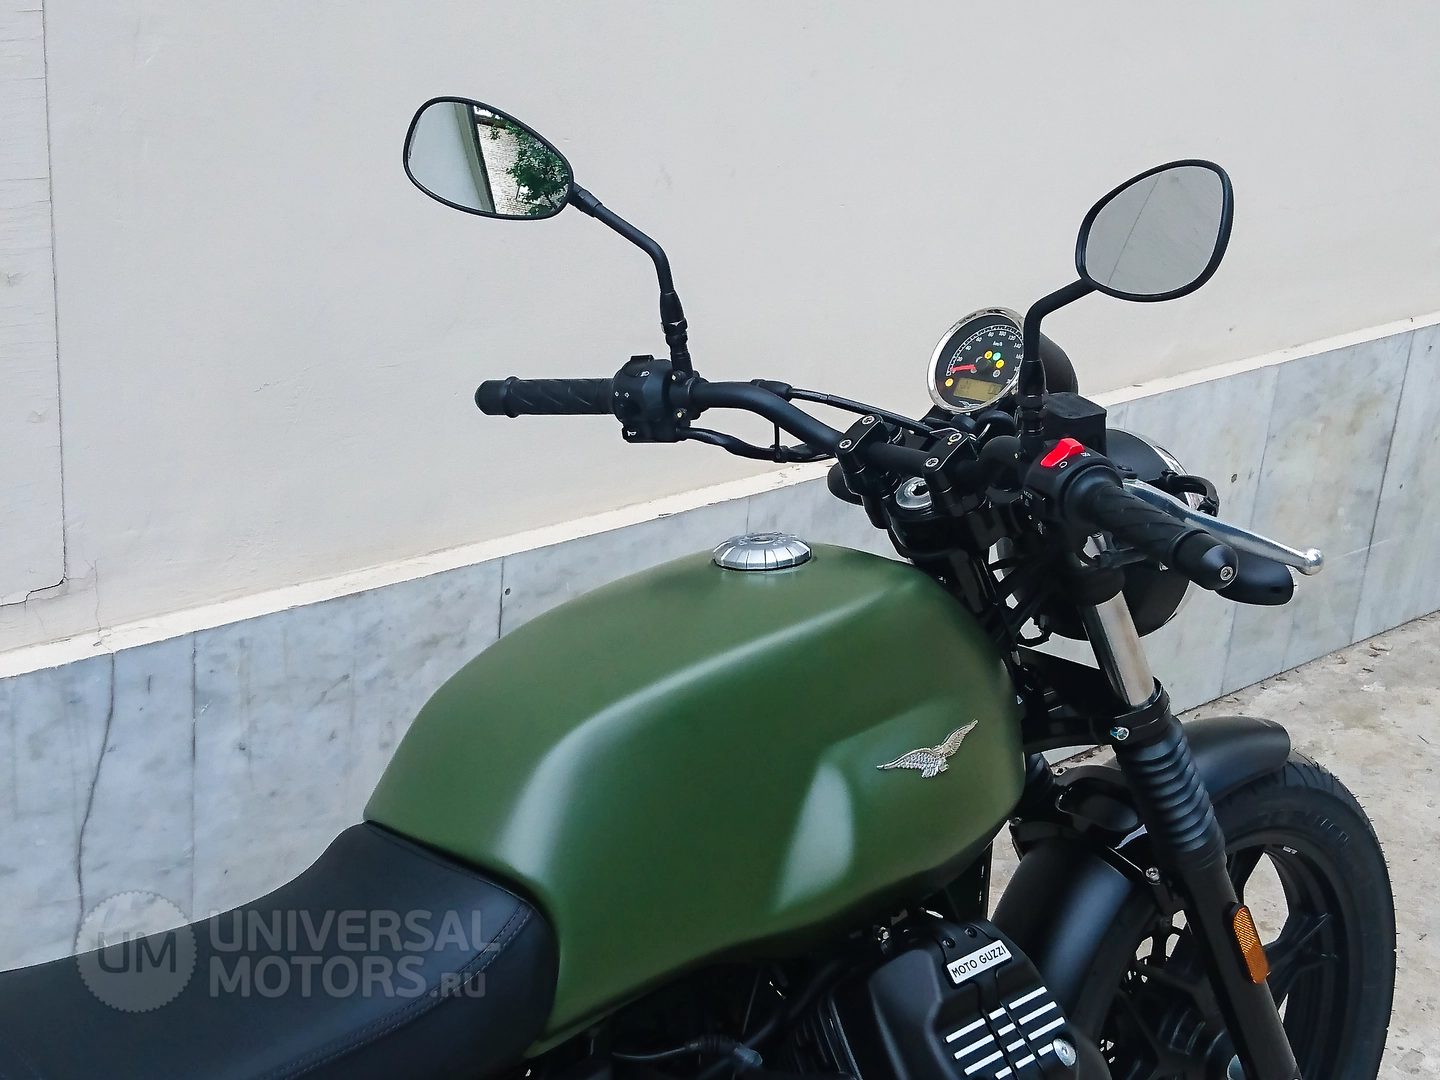 Мотоцикл MOTO GUZZI V7 III Stone ABS, 1862326819622351394